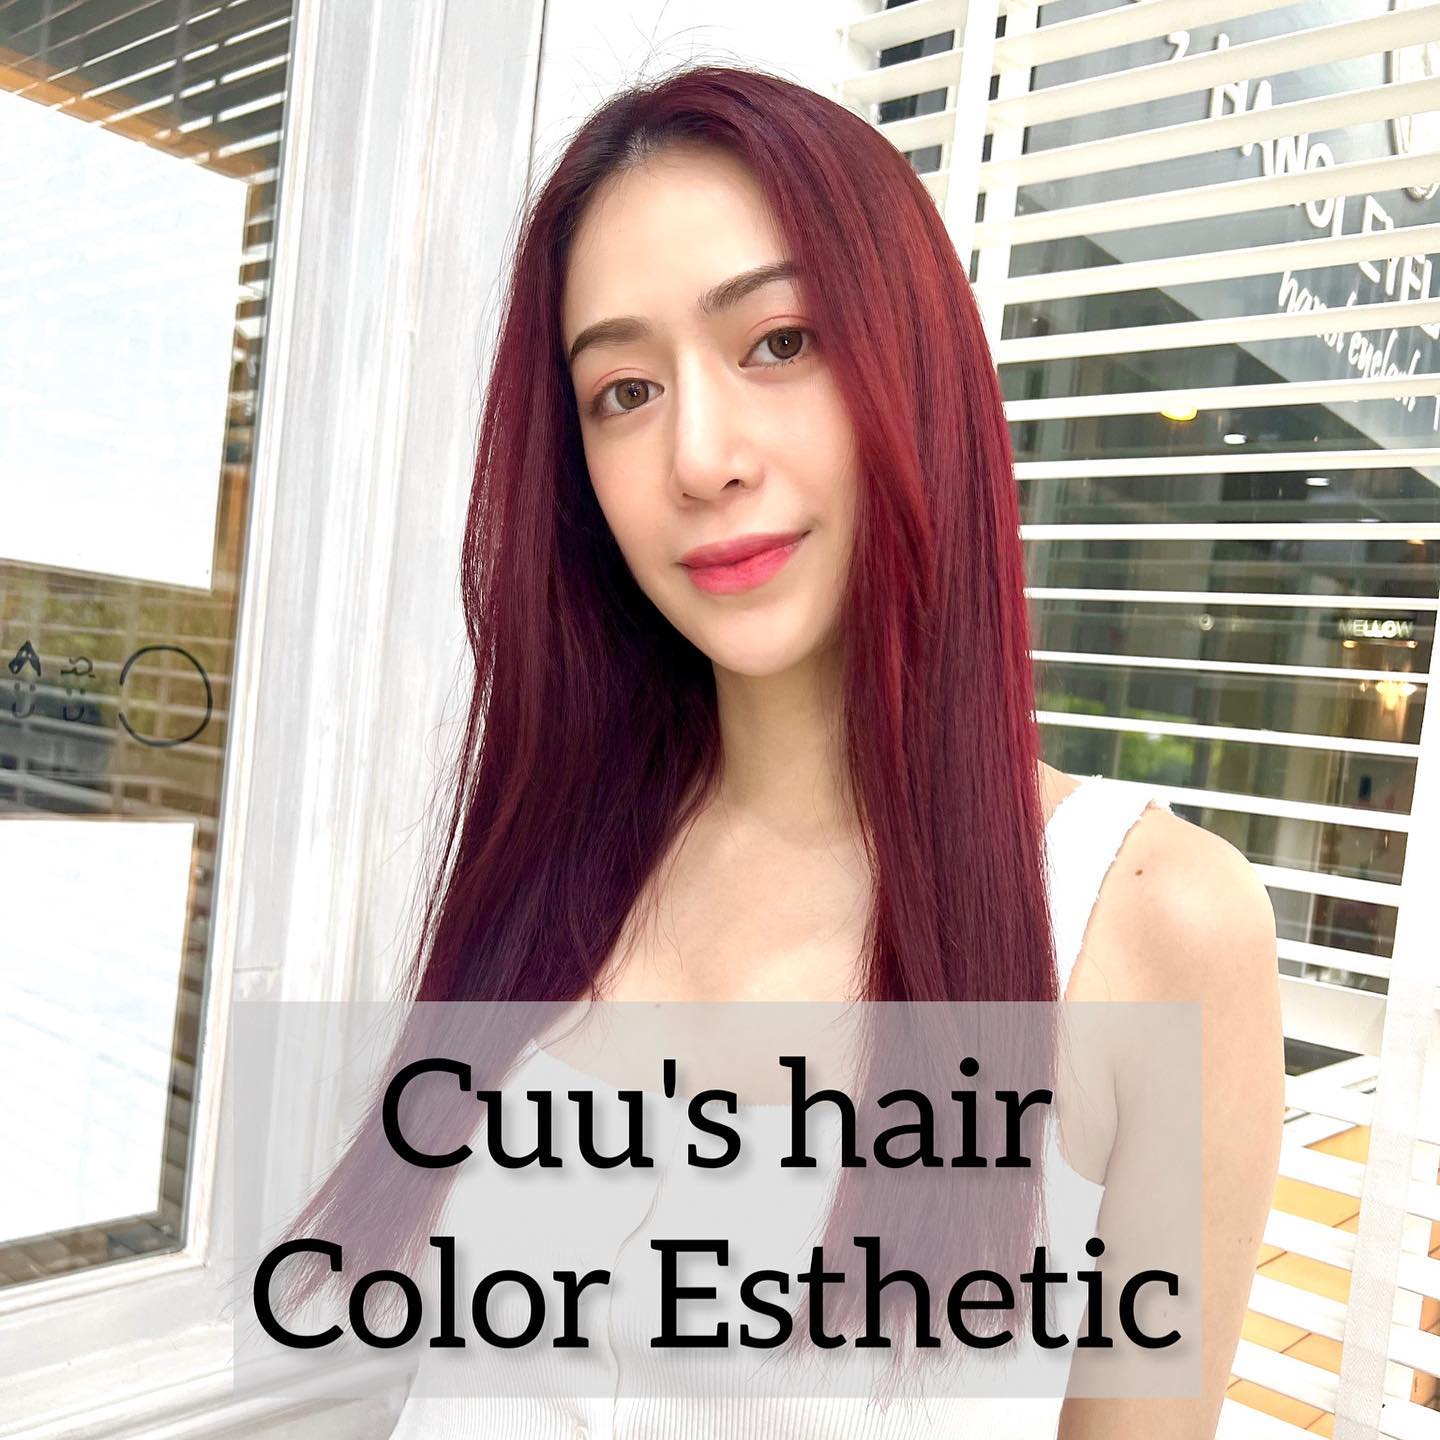 Color Esthetic  สี: ruby red  ถึงแม้จะเป็นรายการเกี่ยวกับการทำสีผม แต่ก็สามารถทำให้เส้นผมมีสุขภาพที่ดีขึ้นได้🤫  เมนูCuu's hair เป็นเมนูยอดนิยม จำเป็นต้องจำกัดสิทธิ์ในการจองคิว แนะนำให้ทุกท่านรีบติดต่อทางเราเพื่อสำรองคิวไว้ล่วงหน้า
สำหรับเมนูนี้เป็นการทำสีพร้อมกับการดูแลเส้นผมด้วยการเติมสารอาหารจำนวนมาก เช่น เคราติน คอลลาเจน กรดอะมิโน กรดไฮยาลูโรนิก เซราไมด์ ฯลฯ 
ไม่ว่าจะเป็นพื้นผมธรรมดา หรือพื้นผมที่ผ่านการฟอก ผมจะดูเงางามขึ้น เนื่องจากเส้นผมได้รับการบำรุงดูแลจากภายใน ไม่ว่าจะมีสภาพเส้นผมอย่างไรผมจะดีขึ้นได้อย่างแน่นอน  แนะนำ!! เหมาะสำหรับผู้ที่ต้องการทำสีผมแต่ไม่ต้องการให้เส้นผมหรือหนังศรีษะถูกทำลายหรือได้รับความเสียหาย   อยากให้ทุกท่านได้สัมผัสกับเมนูทำผมอย่างเต็มรูปแบบที่สัมผัสได้ที่ CUU’s hair ที่เดียวเท่านั้น ‍♀️  Color Esthetic
7300 บาท → 4600 บาท
ตัด ,ทำสี ,ให้คำปรึกษา, ดีท็อกซ์หนังศีรษะ,สระผม, แชมพู ,ทรีทเม้นท์, เซ็ท, เป่า,การรับประกัน (ฟรี) ปรึกษาทางไลน์ (ฟรี) + ตัดหน้าม้าหลังทำ 3 สัปดาห์  ระยะเวลาที่ใช้ : ประมาณ 3 ชั่วโมง  カラーエステは…  ヘアカラーメニューなのに髪の毛が良くなります🤫  クーズヘアの人気メニュー、予約に制限を設けているのでご予約はお早めに！
ケラチン、コラーゲン、アミノ酸、スーパーヒアルロン酸、セラミドなどなどここでは伝えきれない程の栄養をたくさん入れながらカラーの施術しています。普通の髪はもちろん、ブリーチ毛でも、とても艶が出て、髪の内部から栄養補給されてどんな髪でも本来の状態が必ず良くなります！
カラーしたいけど、髪や頭皮を傷ませたくない方におすすめです！  クーズヘアのオリジナル、髪エステ是非体験してください‍♀️  IG:cuushair
Facebook : Cuu's​ hair
TEL : 02-065-0909
#bangkok #thonglor #bangkokhairsalon #ผม #เกาหลี #ม้วนผมเกาหลี #ร้านเสริมสวย #ดัดผม #สไตล์เกาหลี #hairesthetic #organic